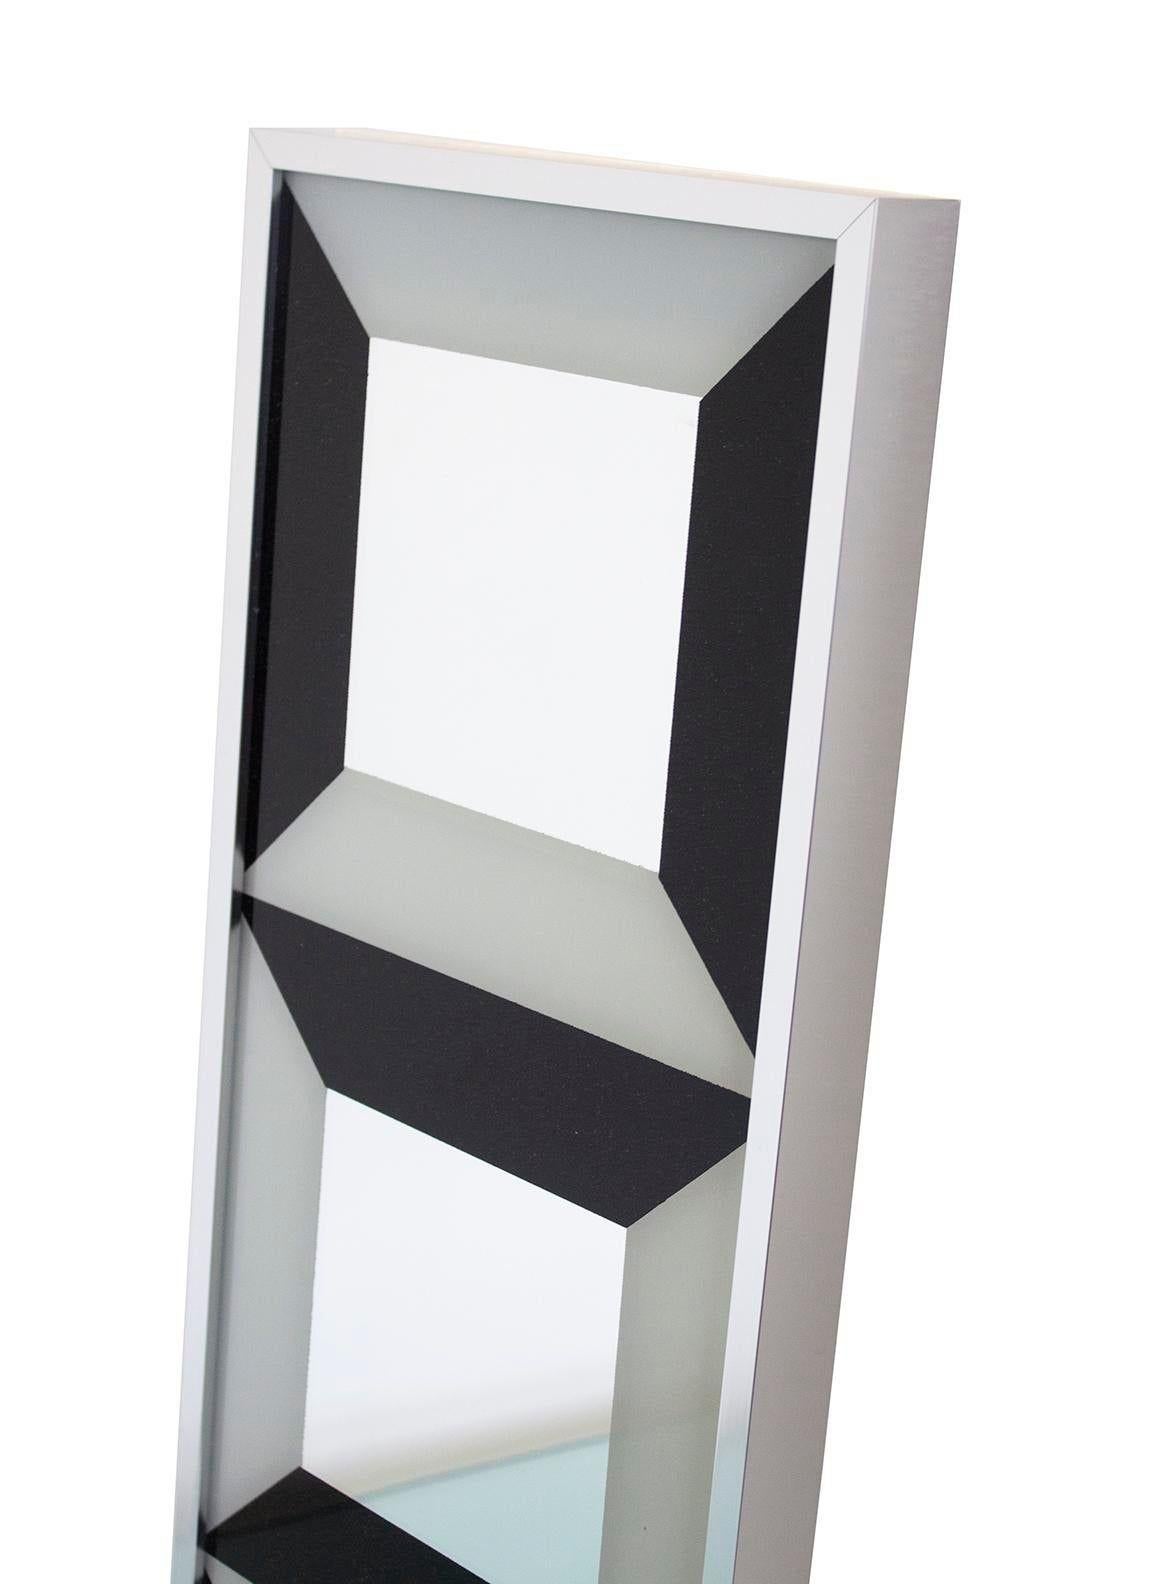 États-Unis, années 1970
Miroir Op Art de Verner Panton / Turner Mfg. Il s'agit d'une configuration verticale de trois carrés avec une bordure op art noire et blanche autour d'un panneau central en miroir. Cette pièce au profil mince est idéale pour